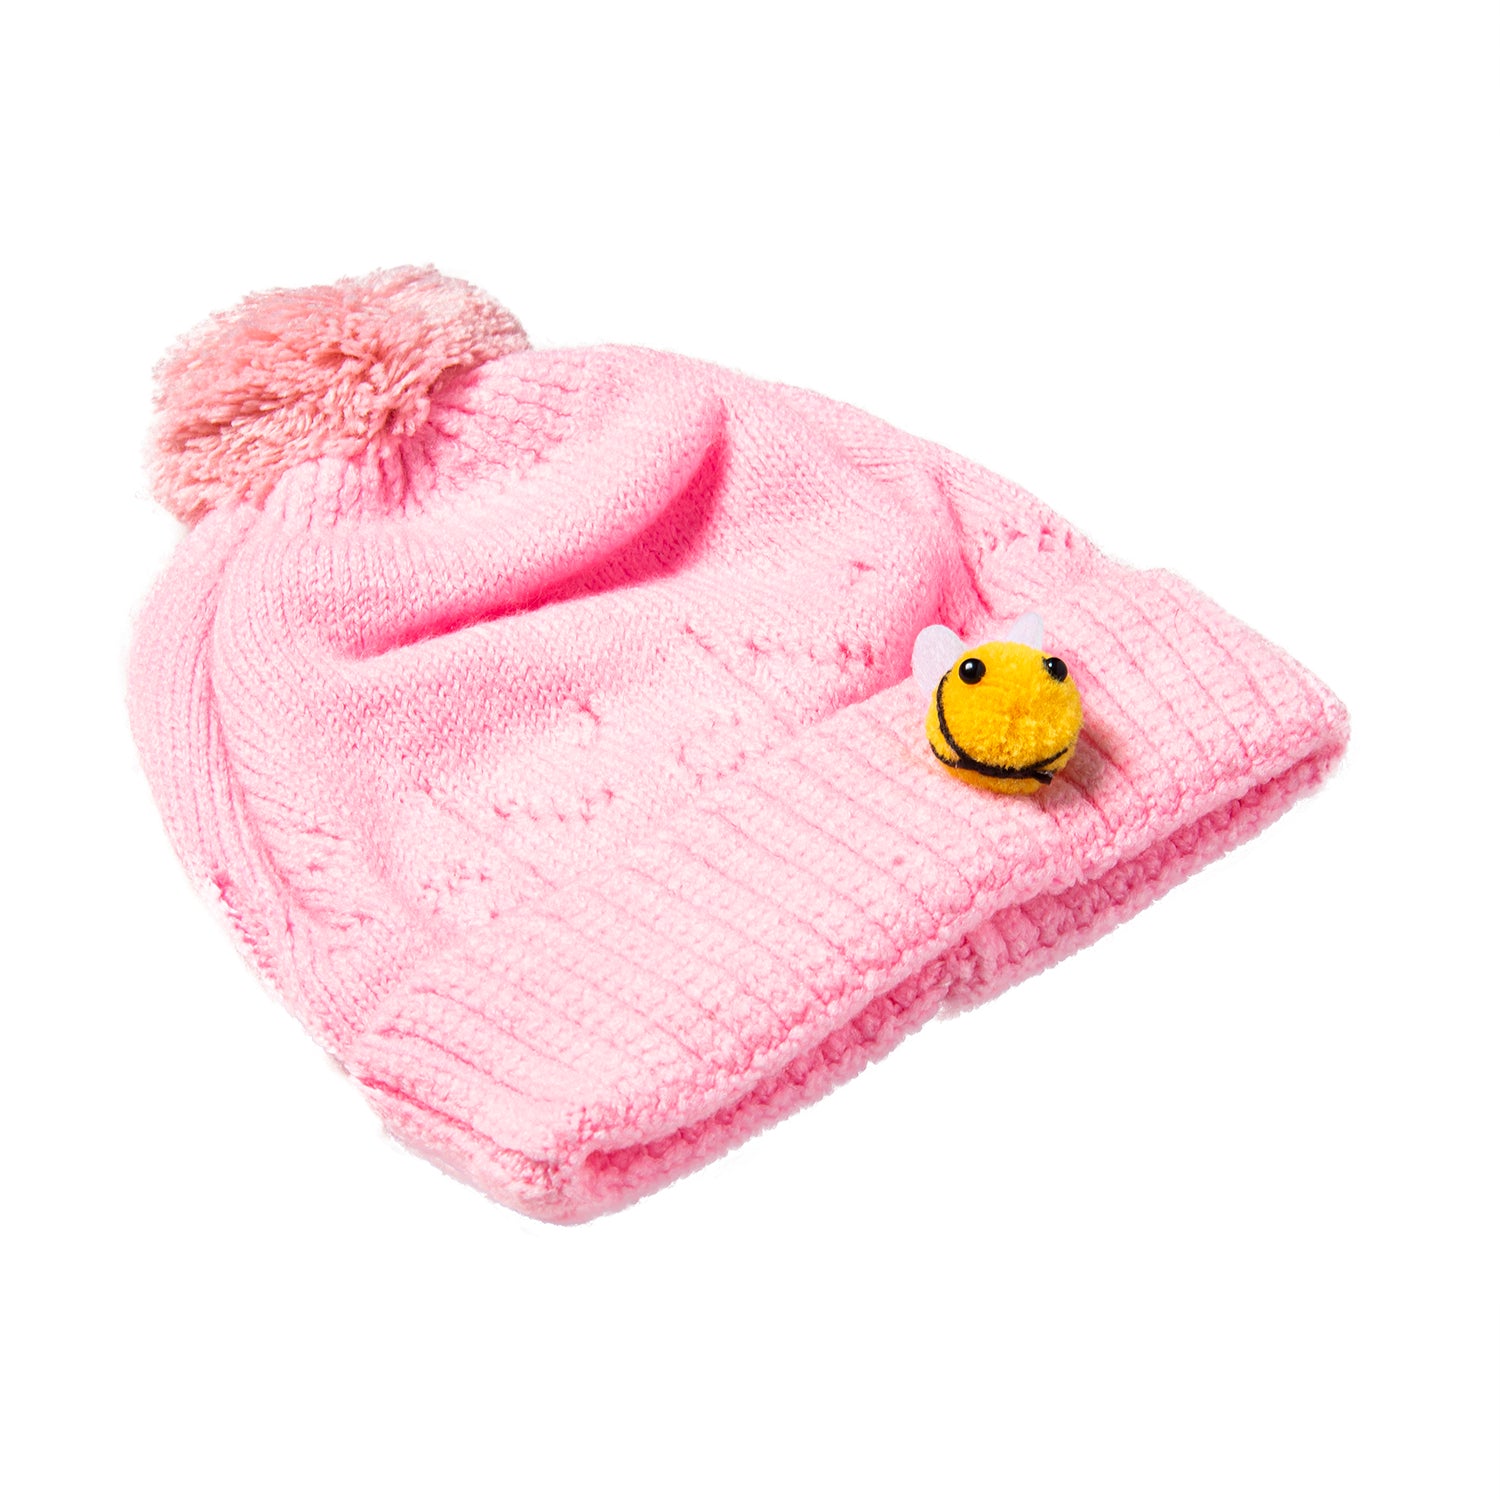 Knit Woollen Cap Honey Bee Pink - Baby Moo